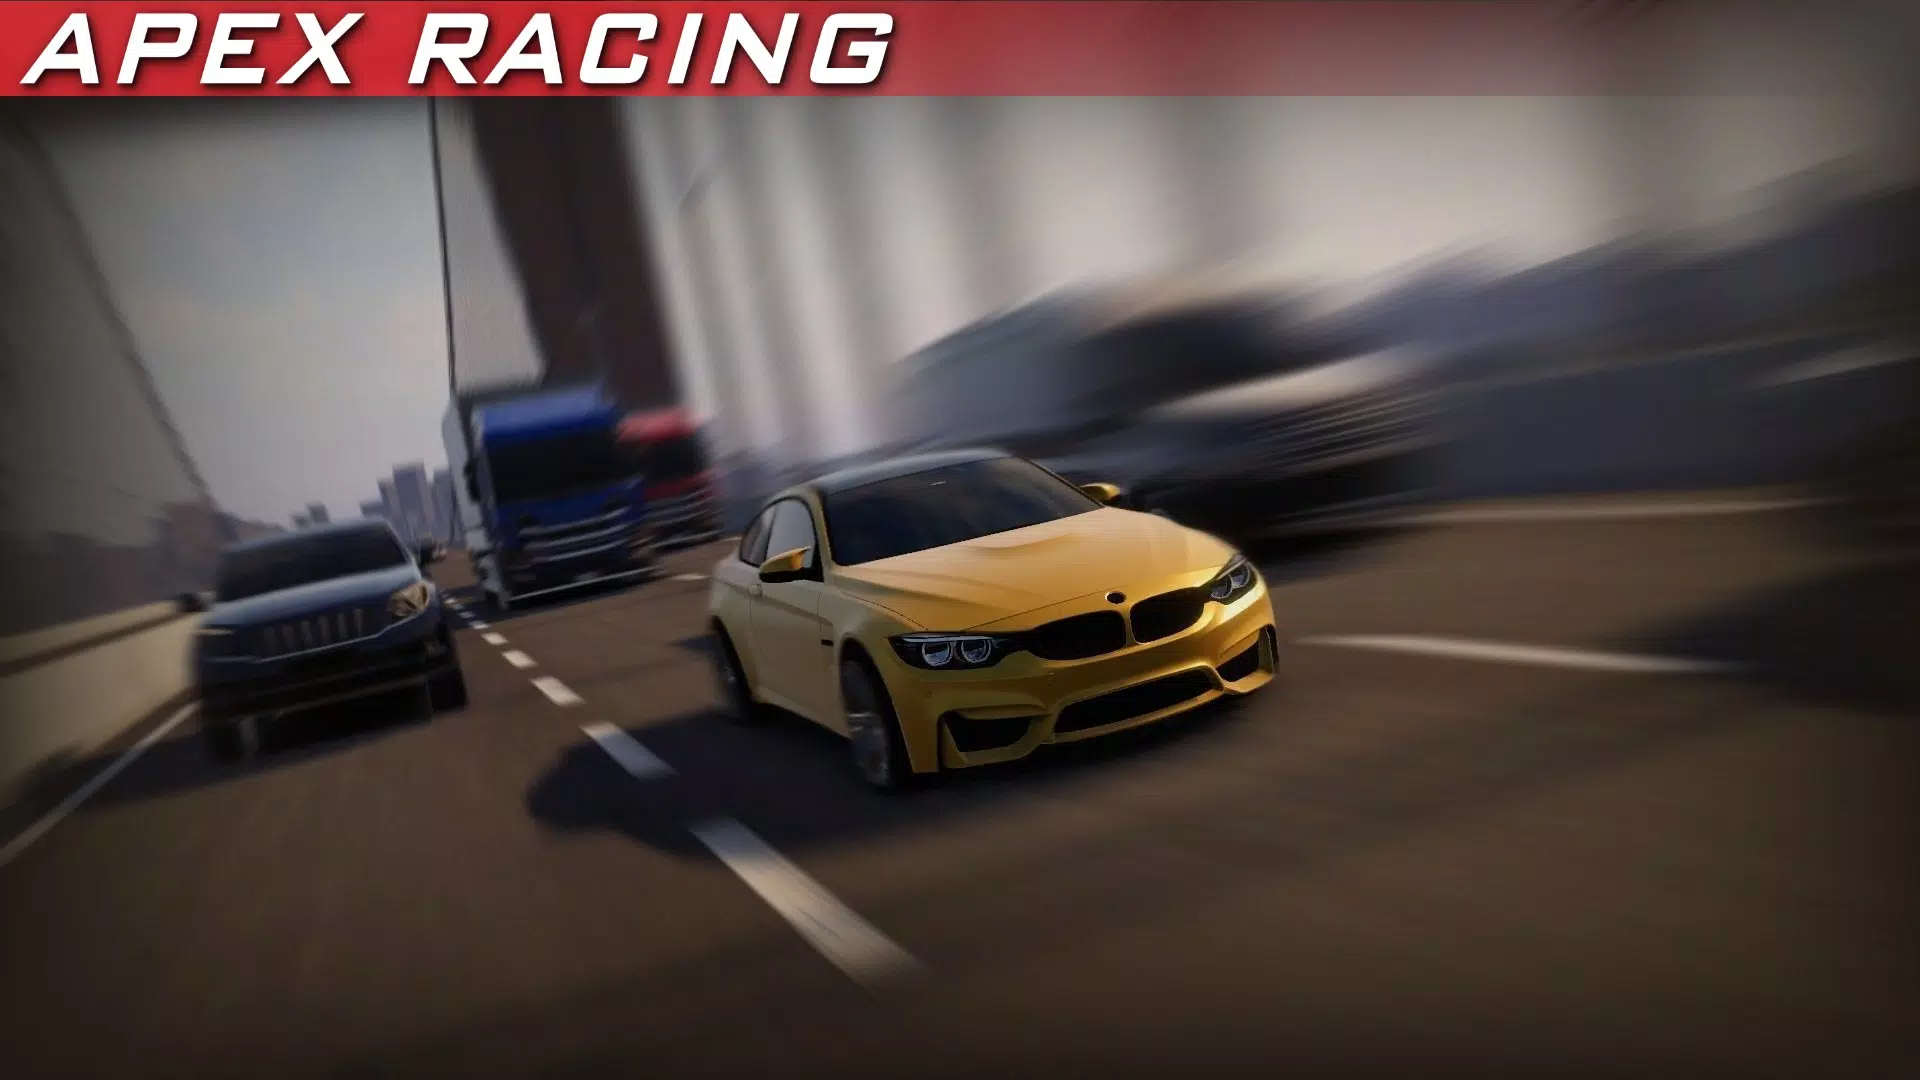 تحميل لعبة GRID Autosport Custom Edition للاندرويد النسخة المجانية